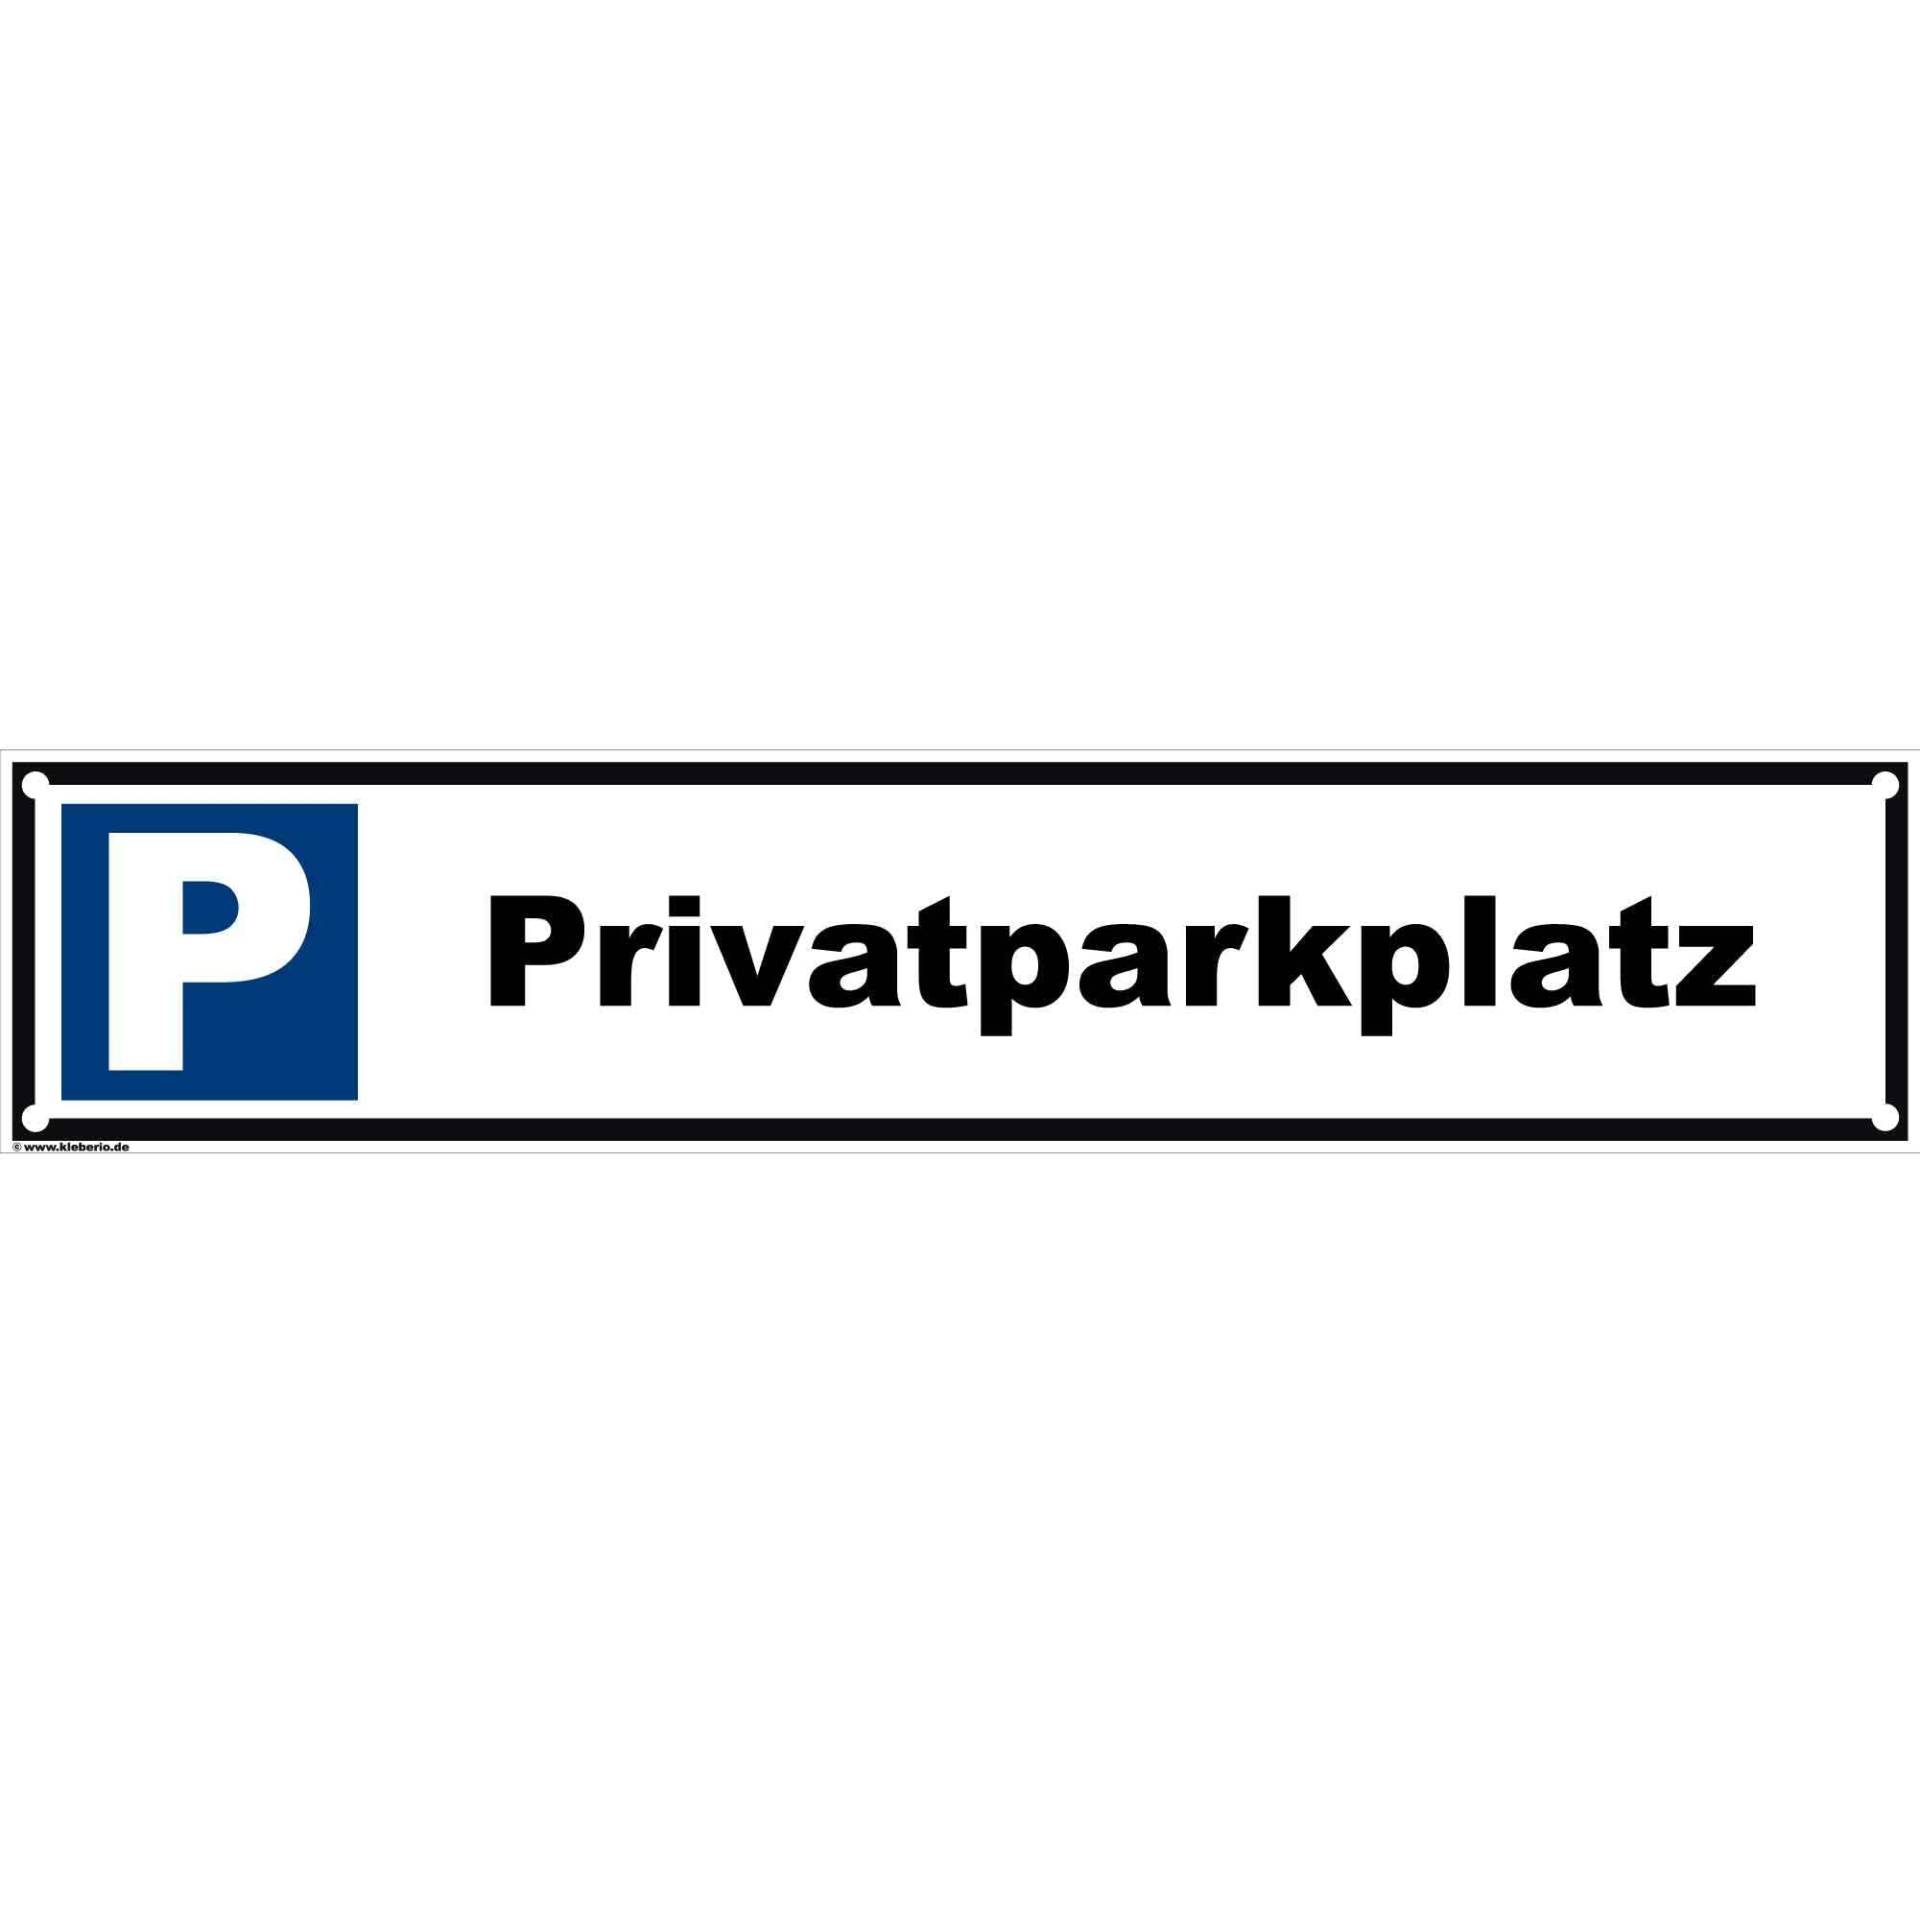 kleberio® Parken verboten - Privatparkplatz - 52 x 11 cm gelocht Parkverbotsschild Parkplatzschild Verkehrs-Schilder Einfahrt freihalten von kleberio